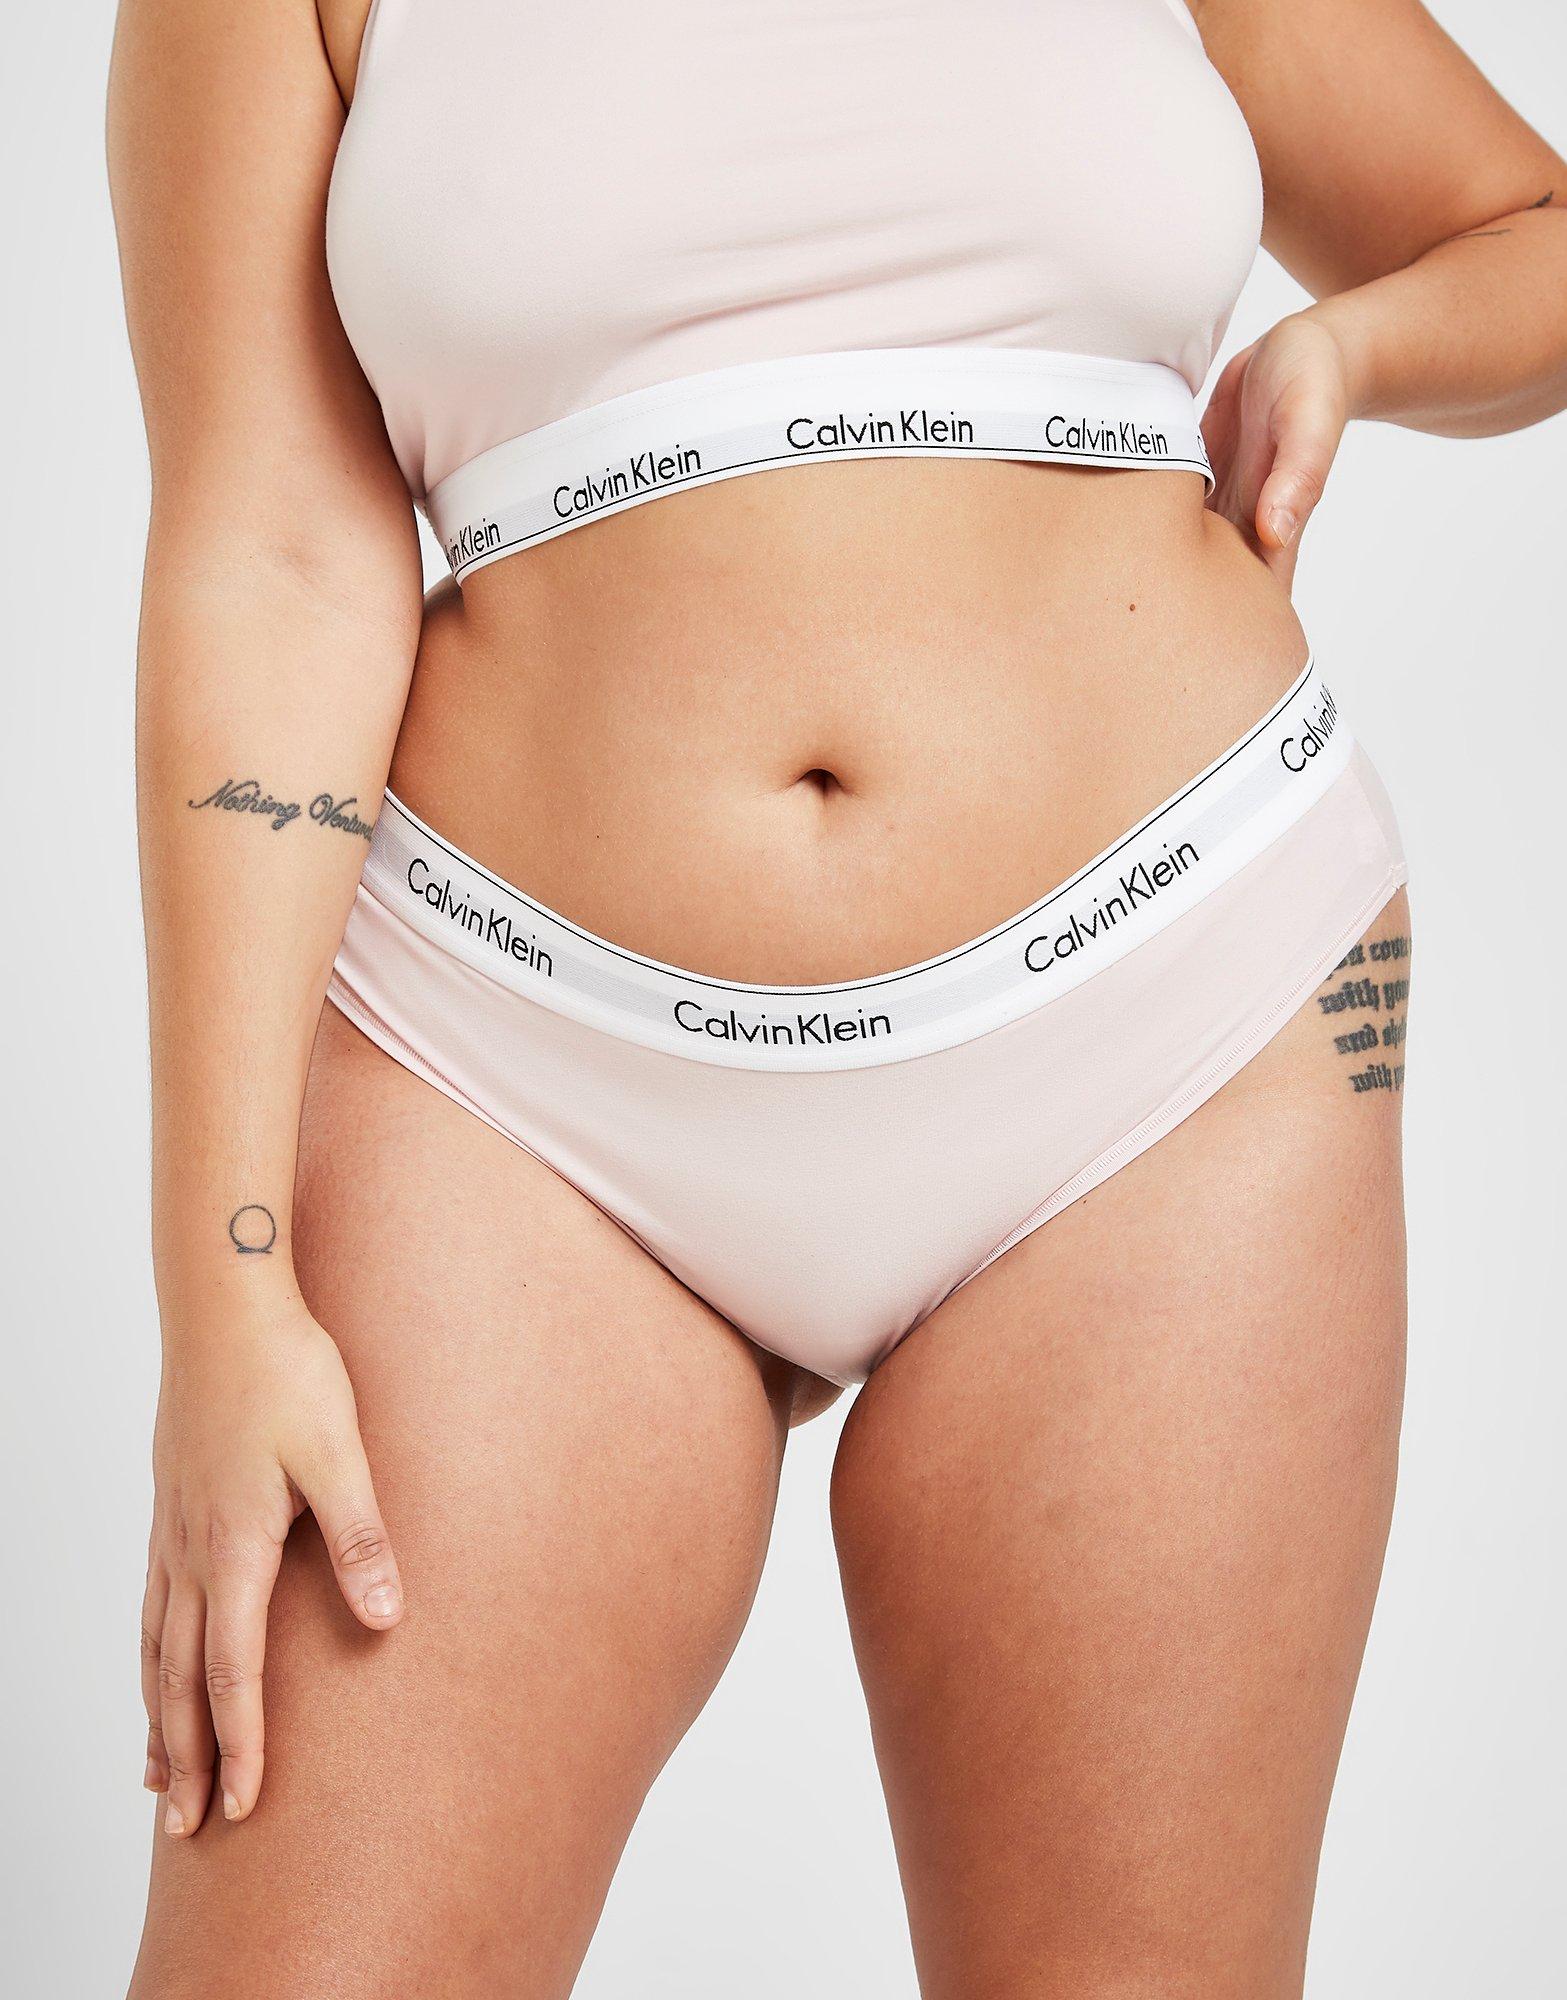 calvin klein underwear online shop europe